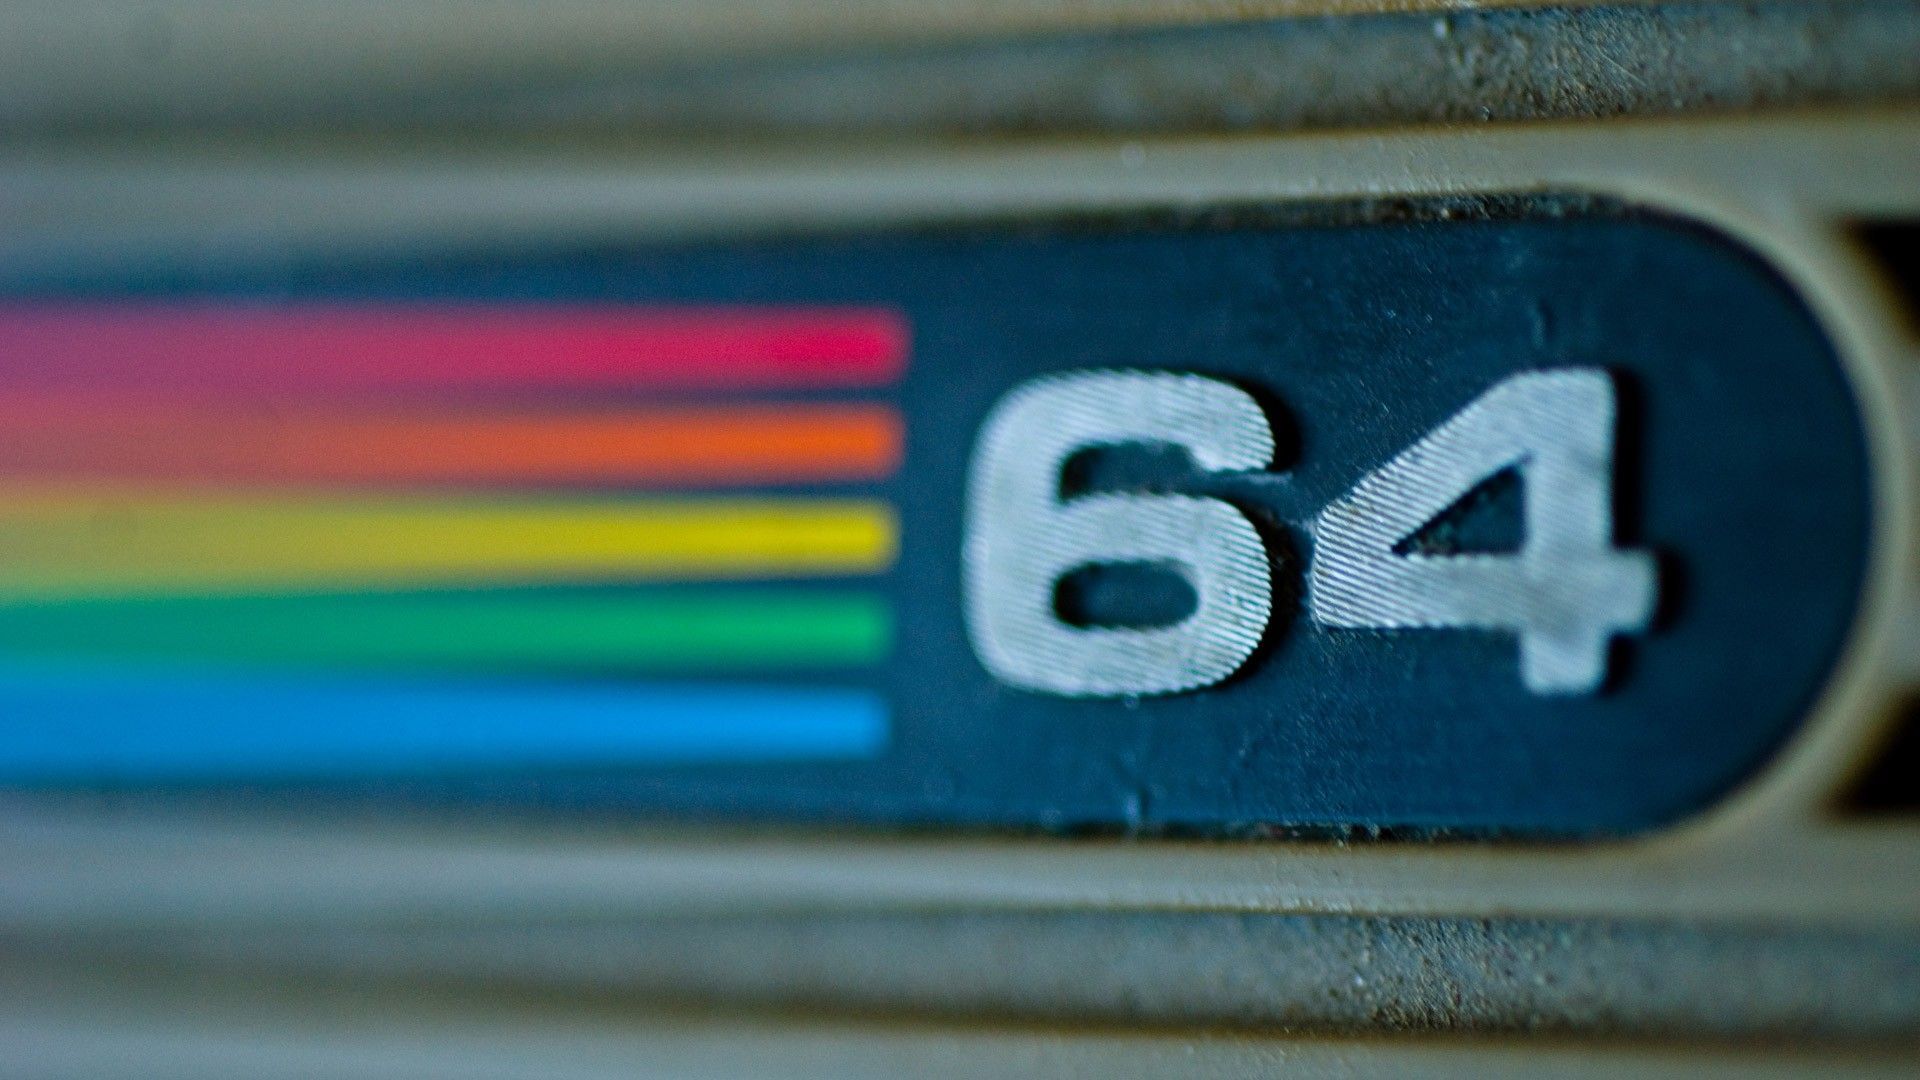 commodore-64-logo-image